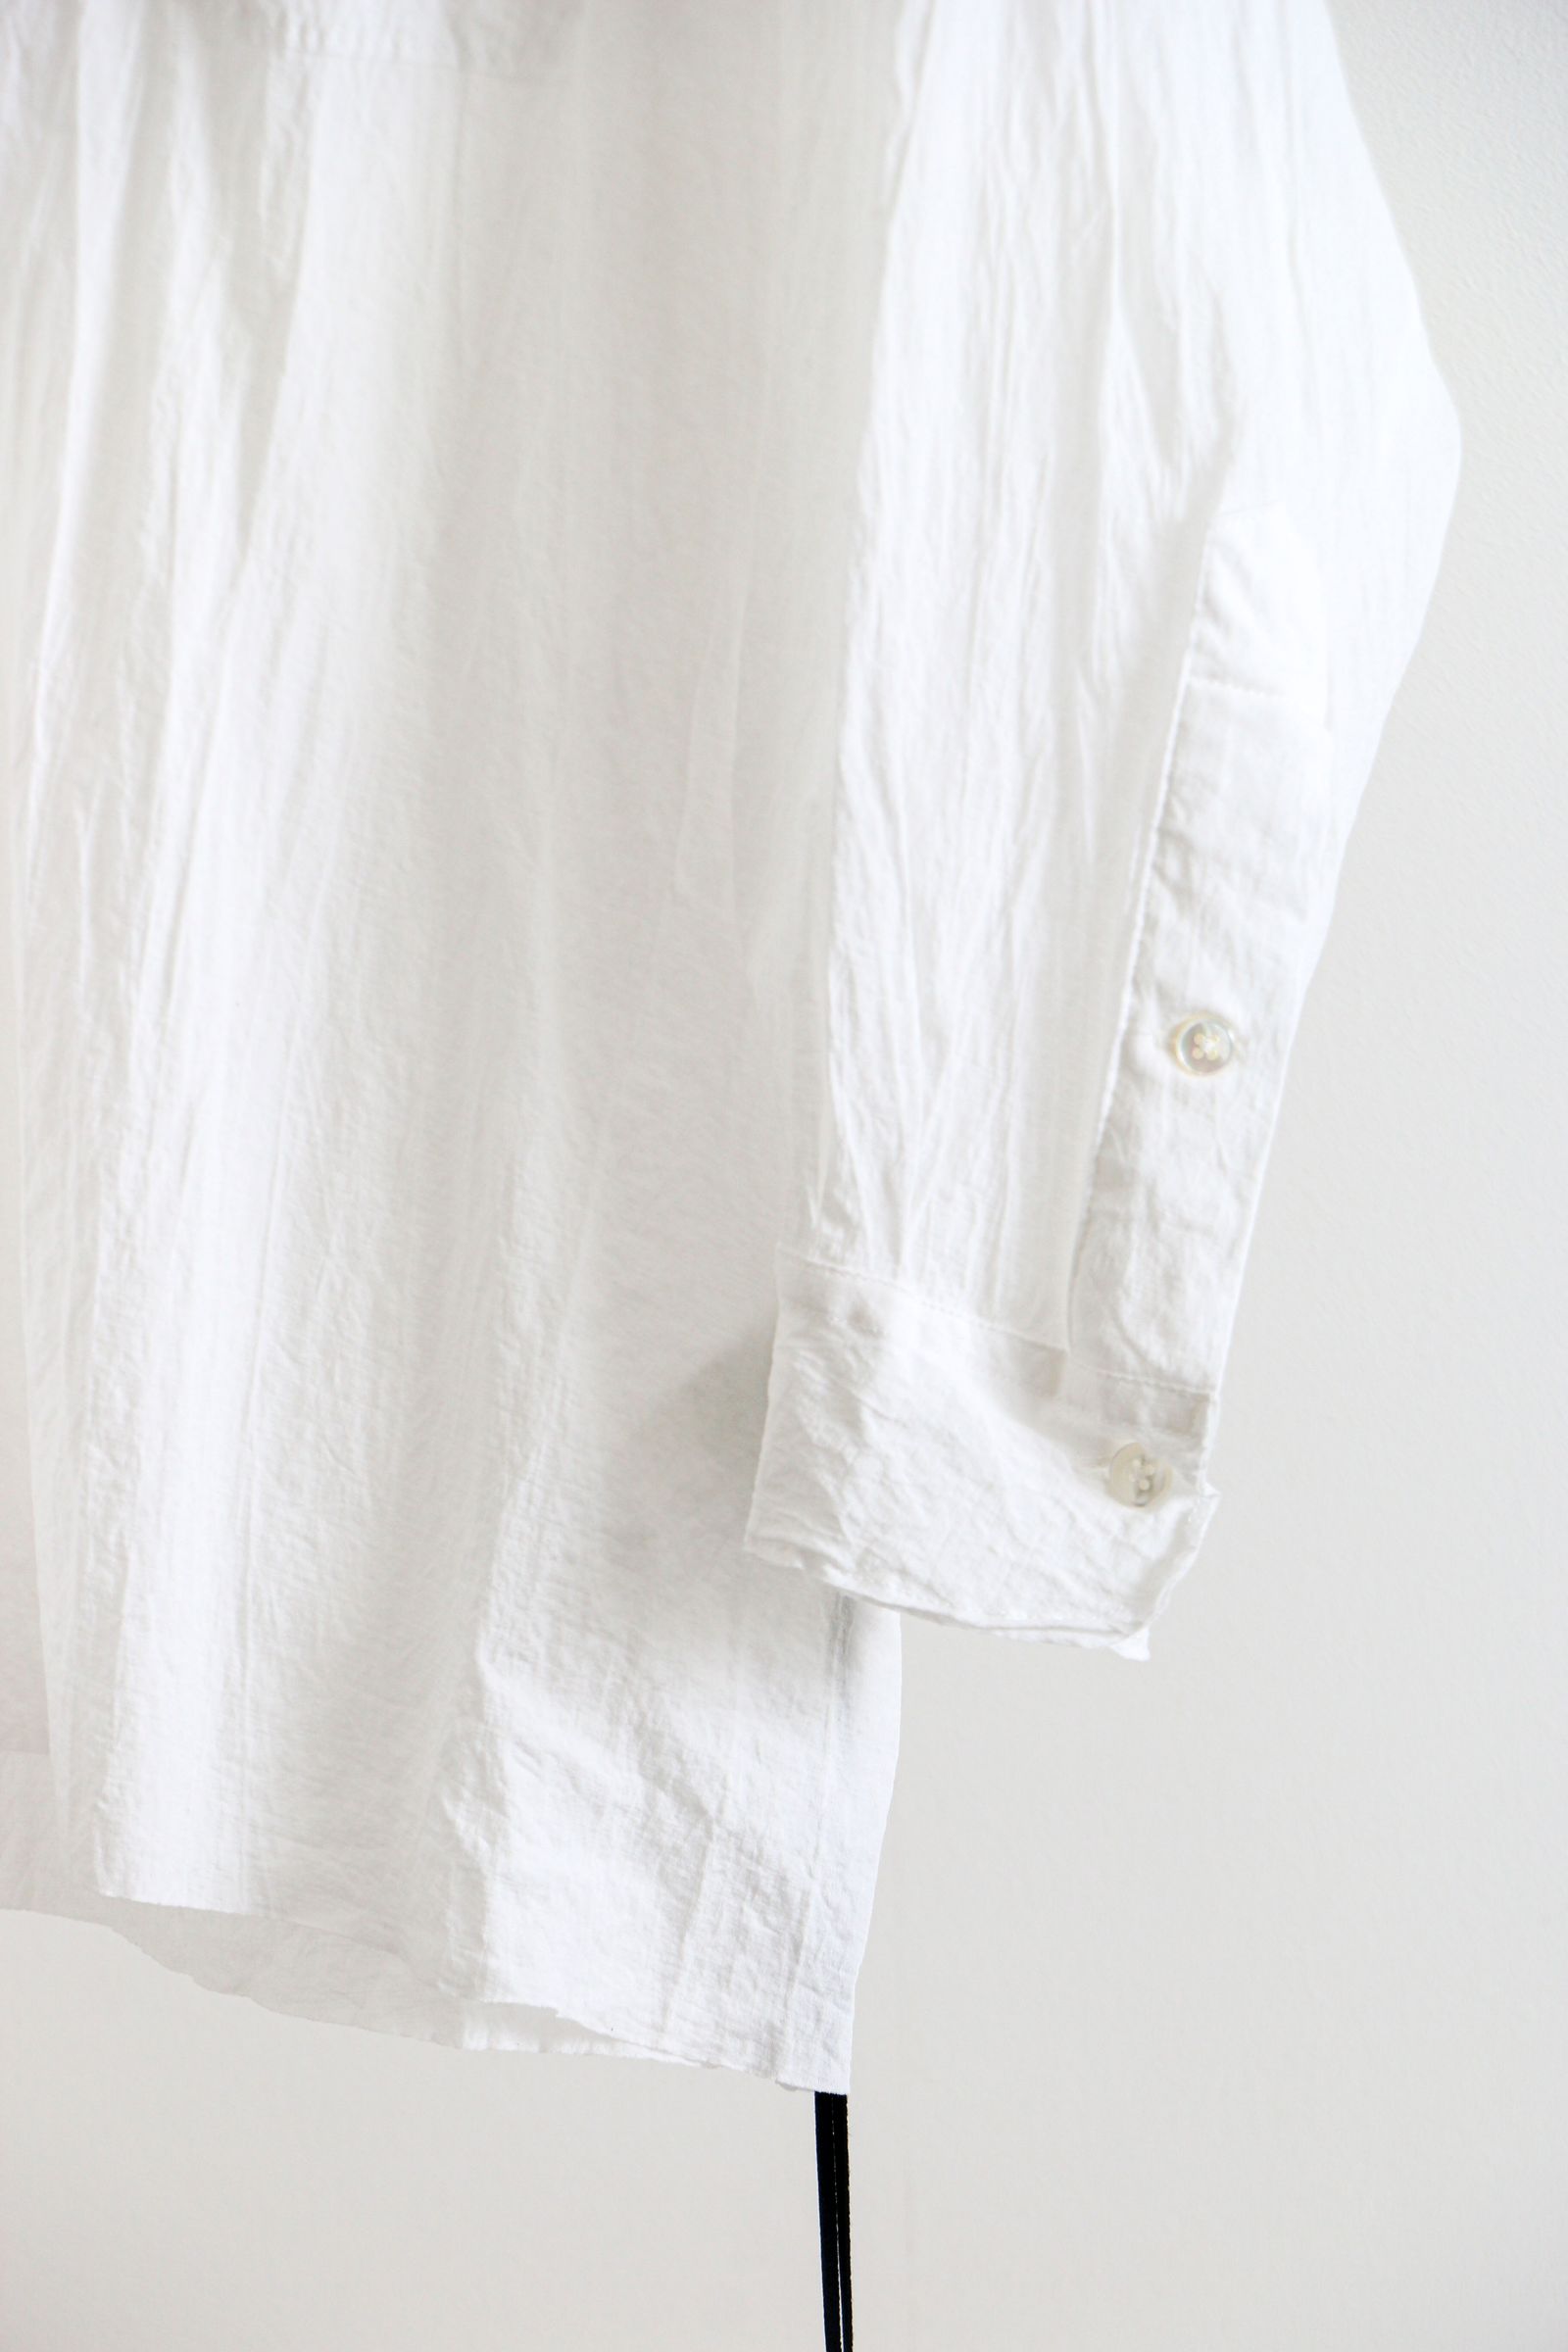 KANEMASA PHIL. - 46G Artisan Jersey Shirt WHITE / シャツ | koko